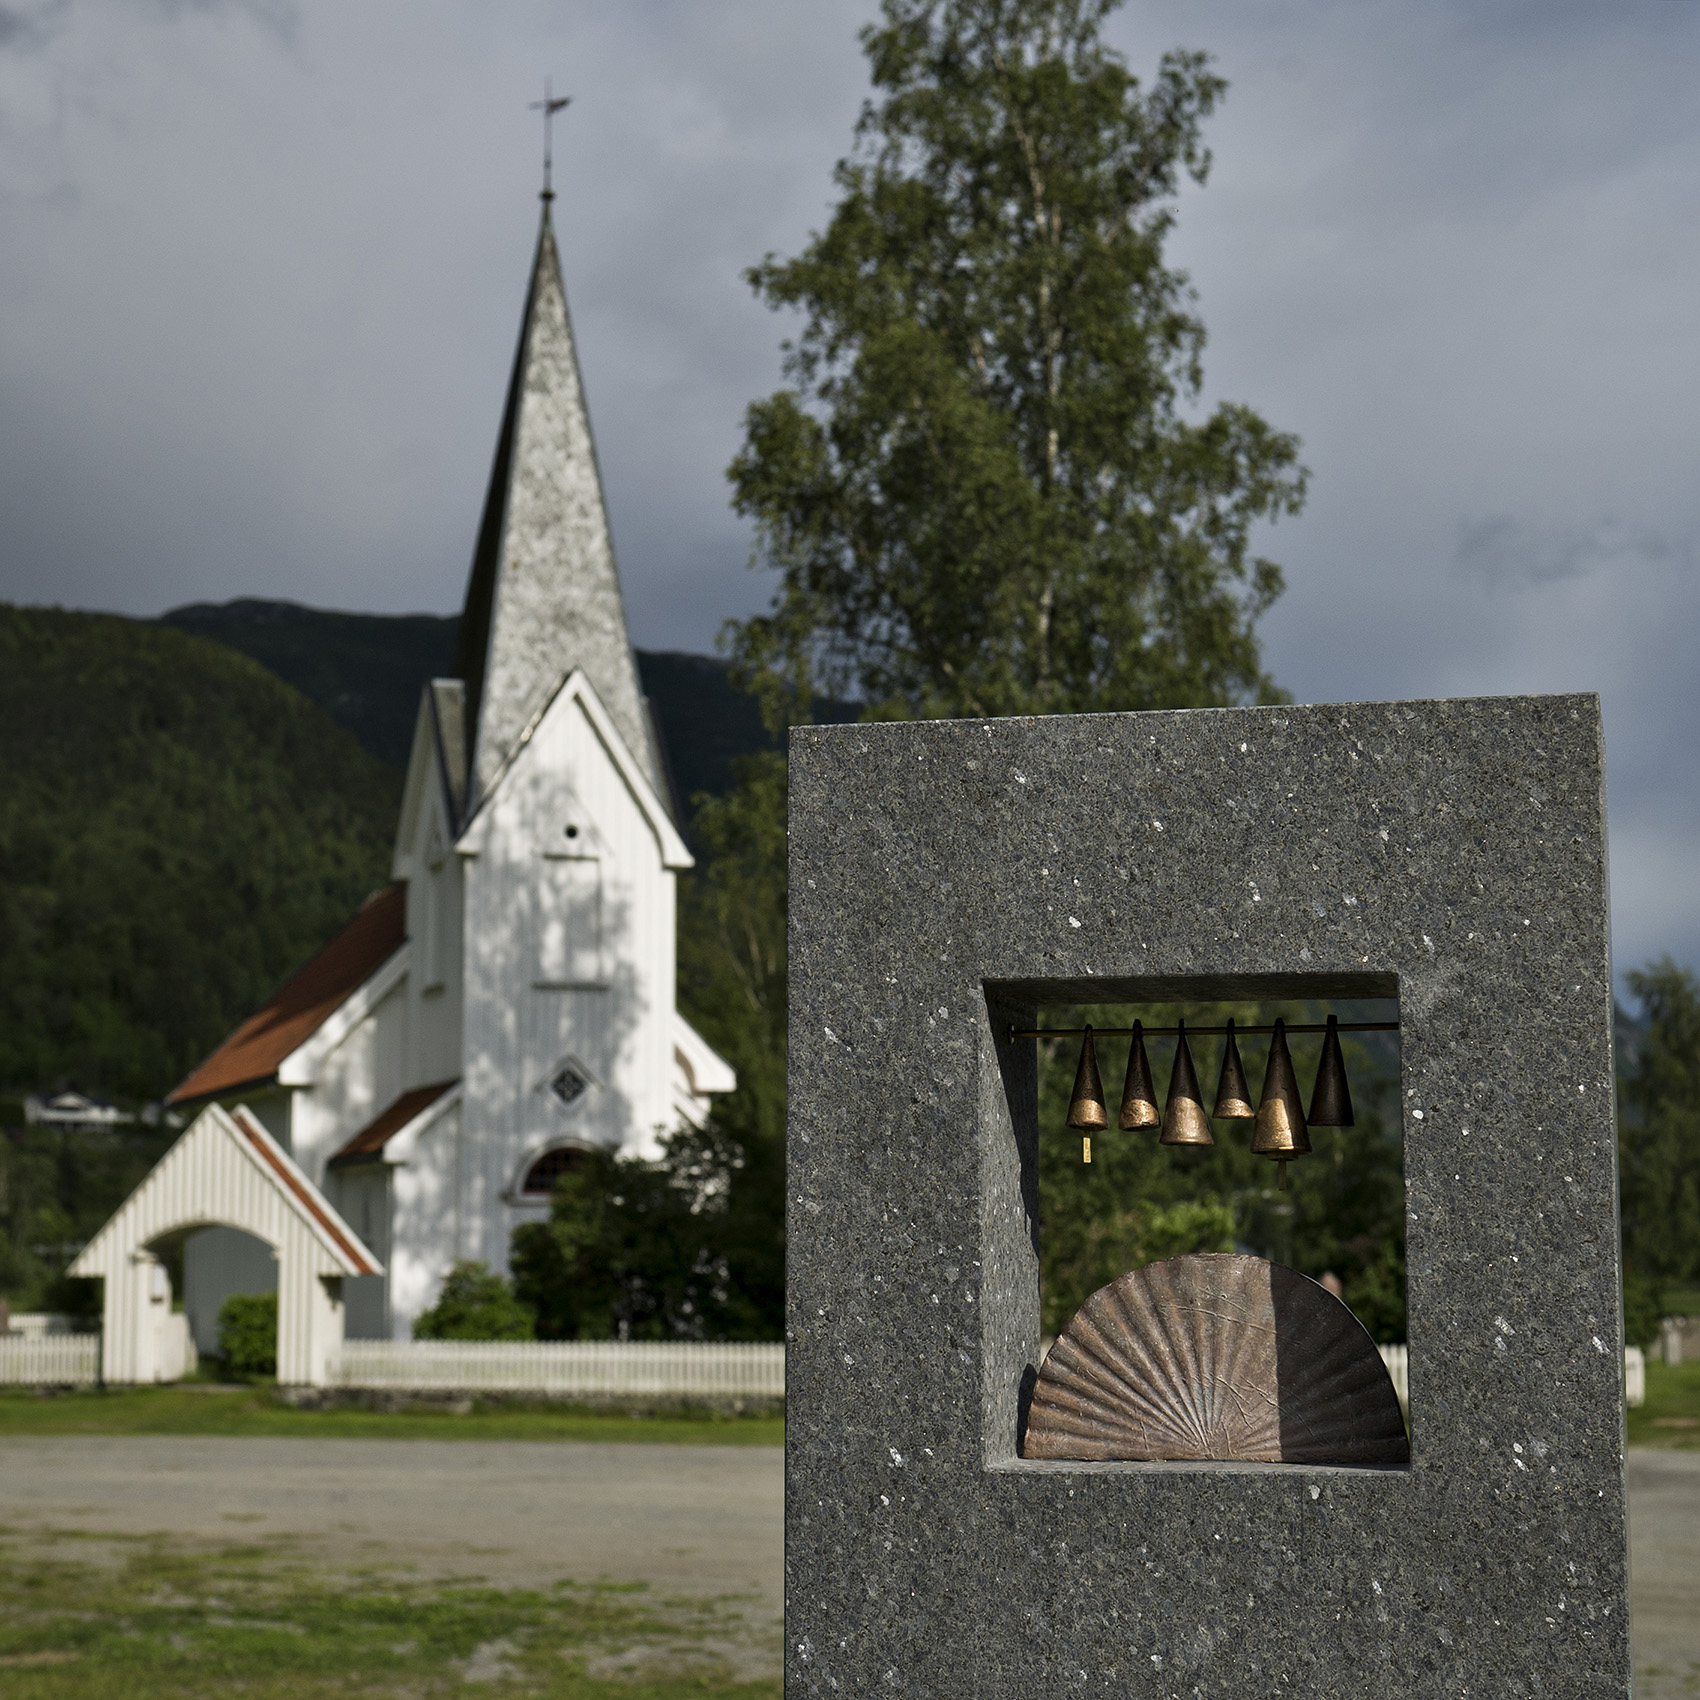   Kikkeskåp Ljose-Signe i Bindingsnuten ved Flatdal kyrkje - kunstnar Kristine Brodersen. Foto: Dag Jensen  